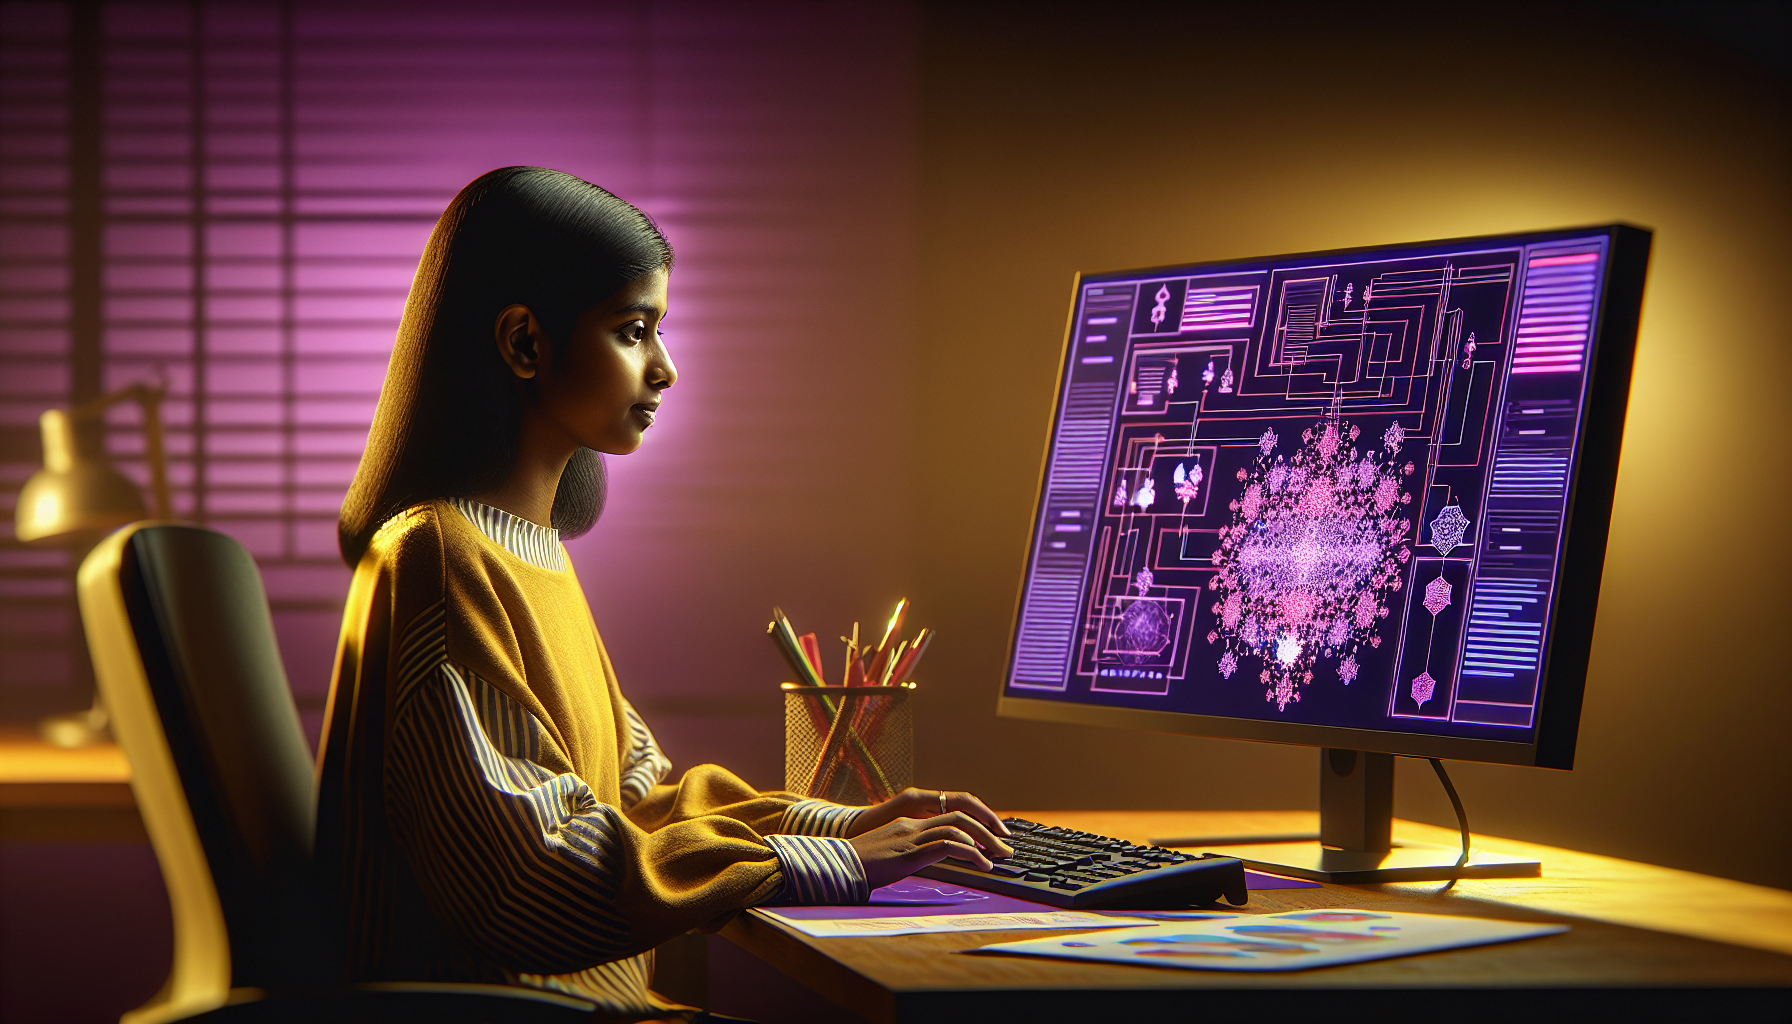 femme sud asiatique travaillant ordinateur interface violette diagrammes flux detailles eclairage chaleureux.jpg